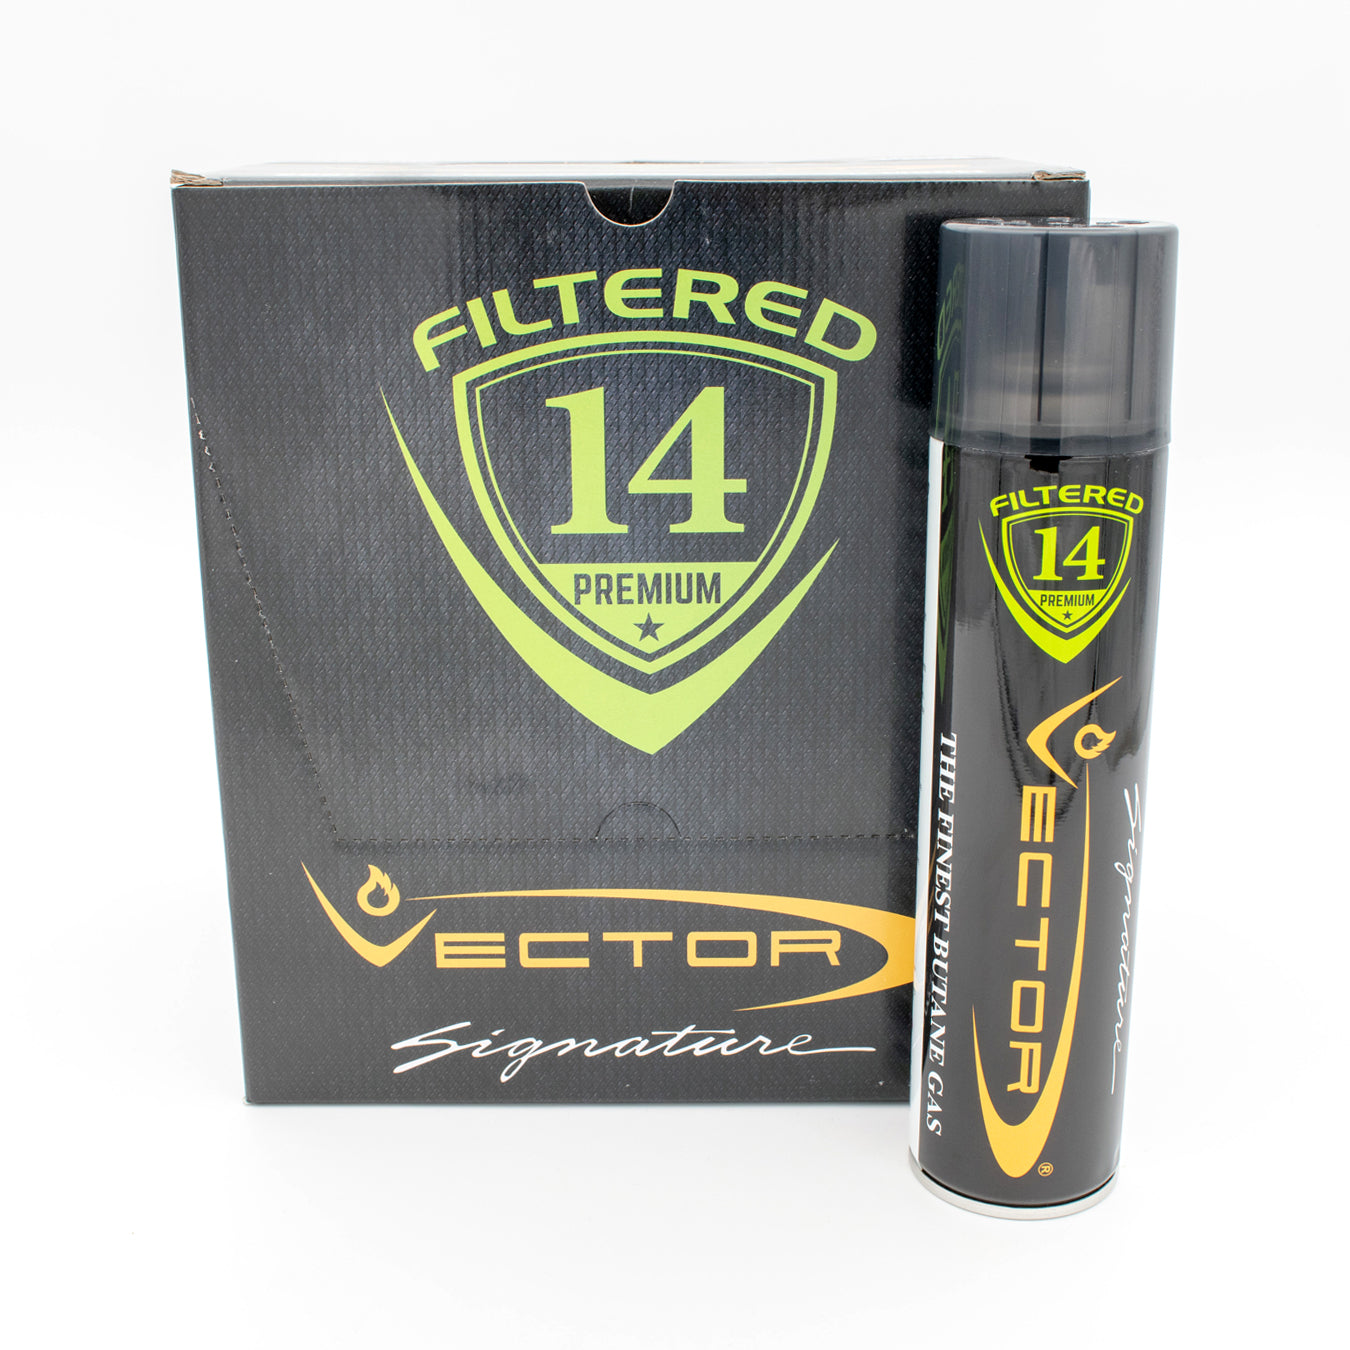 Vector 14x Filtered Premium Refined Fuel Butane Gas Refill 12 Per Case